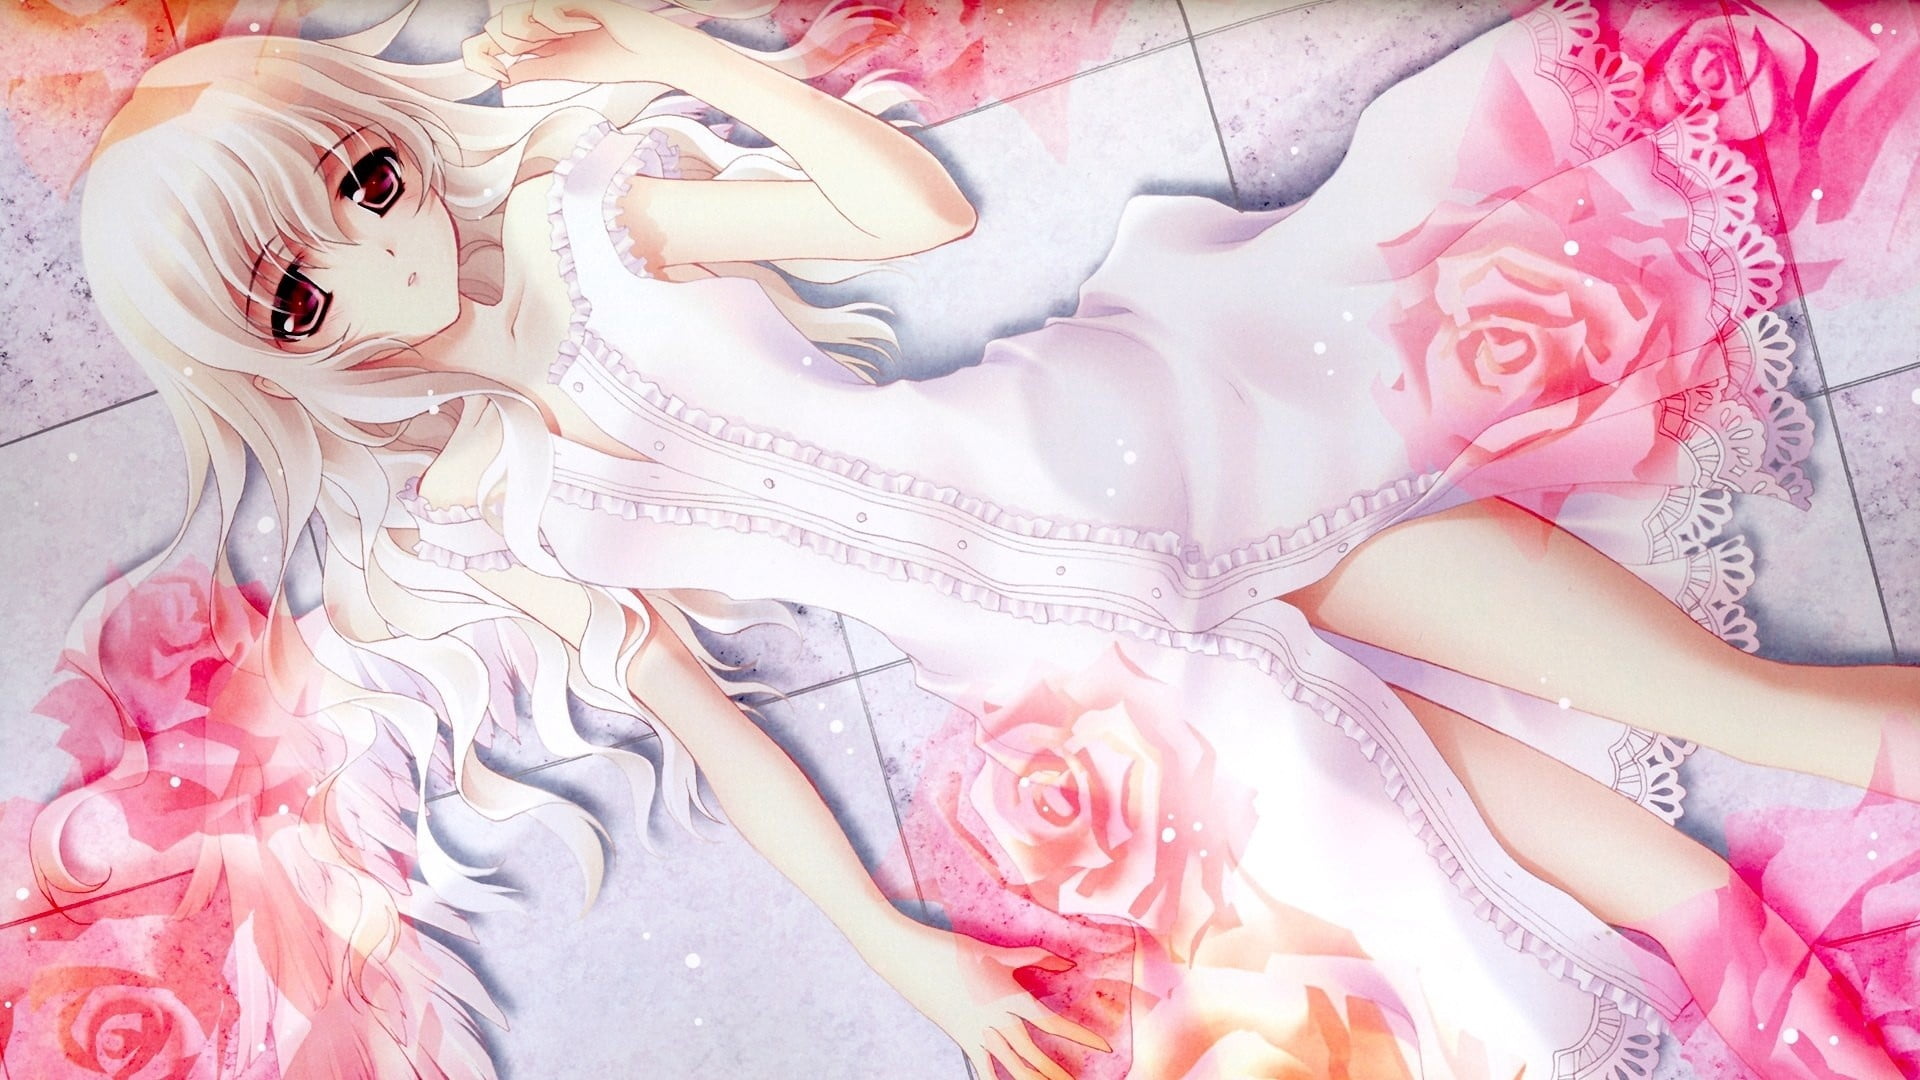 white haired female anime character illustration, girl, dress